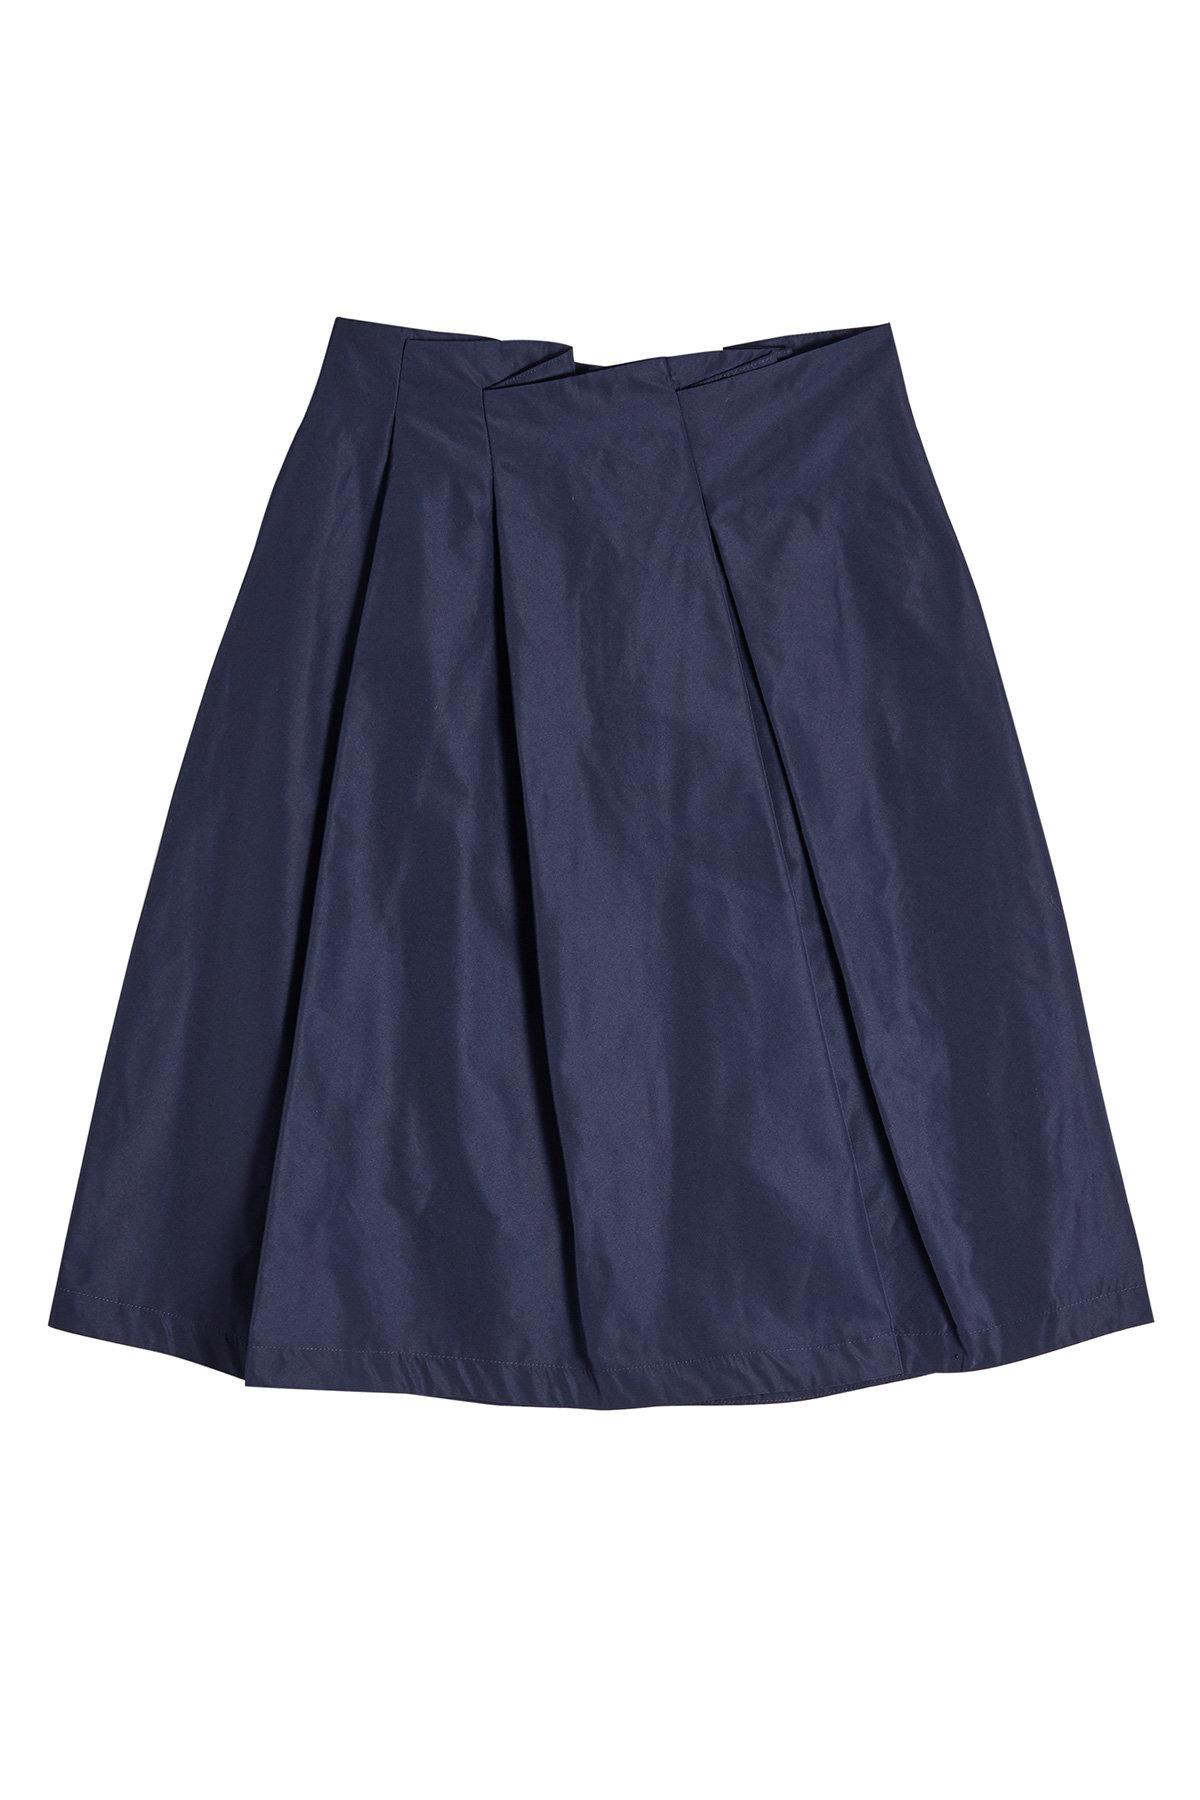 Jil Sander Navy Pleated Mini Skirt In Blue | ModeSens